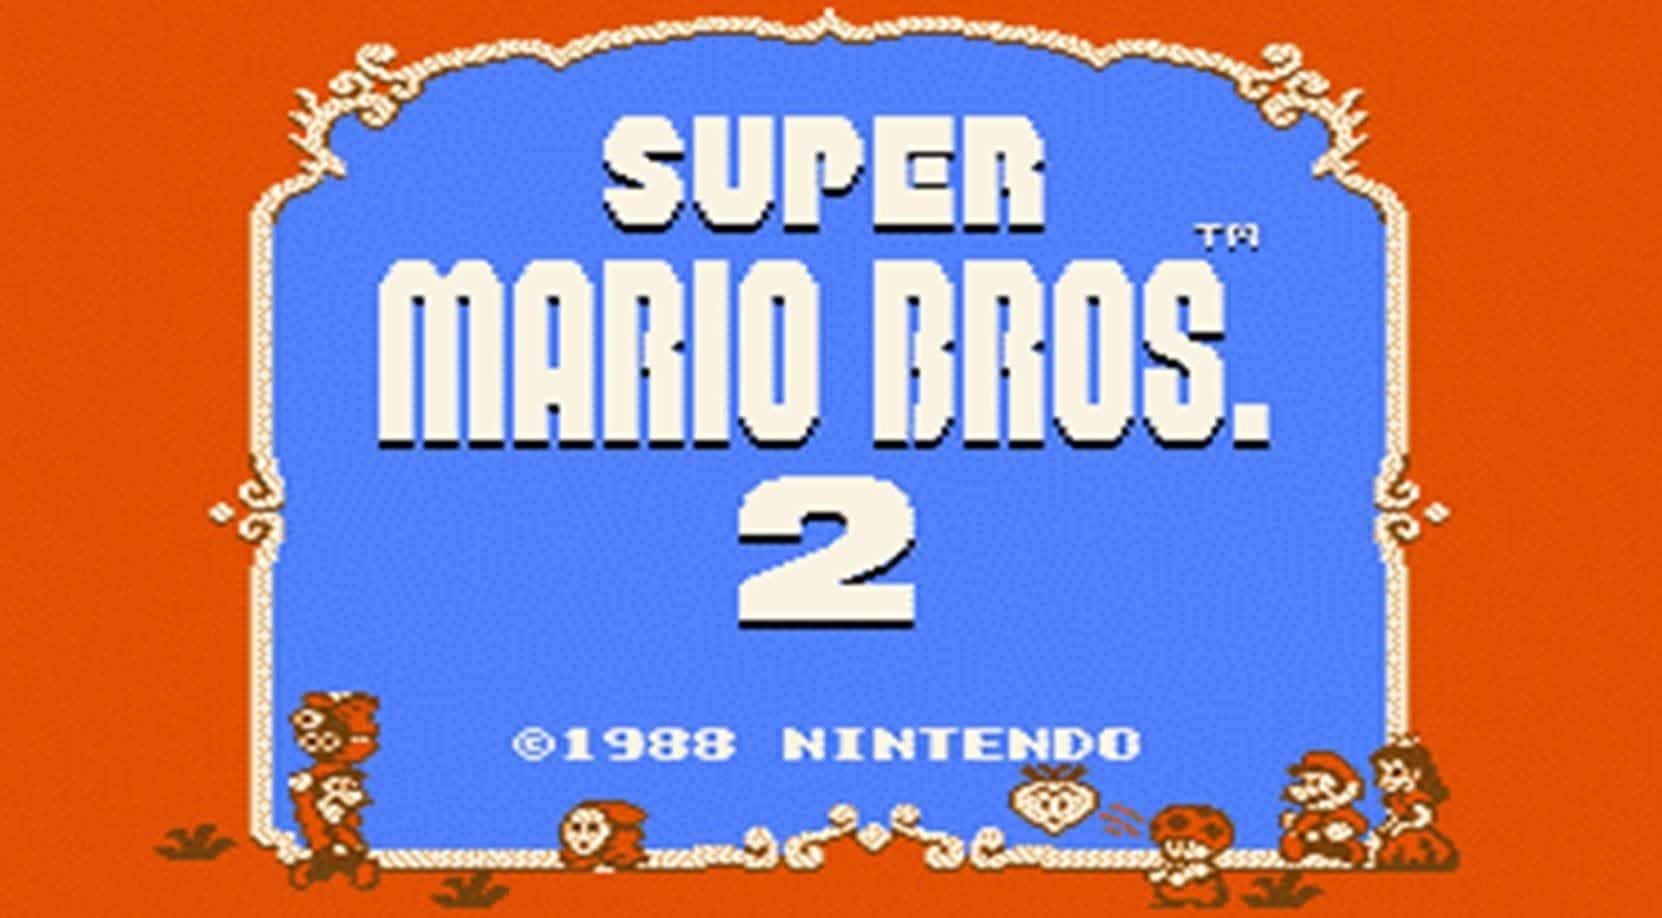 Best Super Mario Games - Super Mario Bros 2